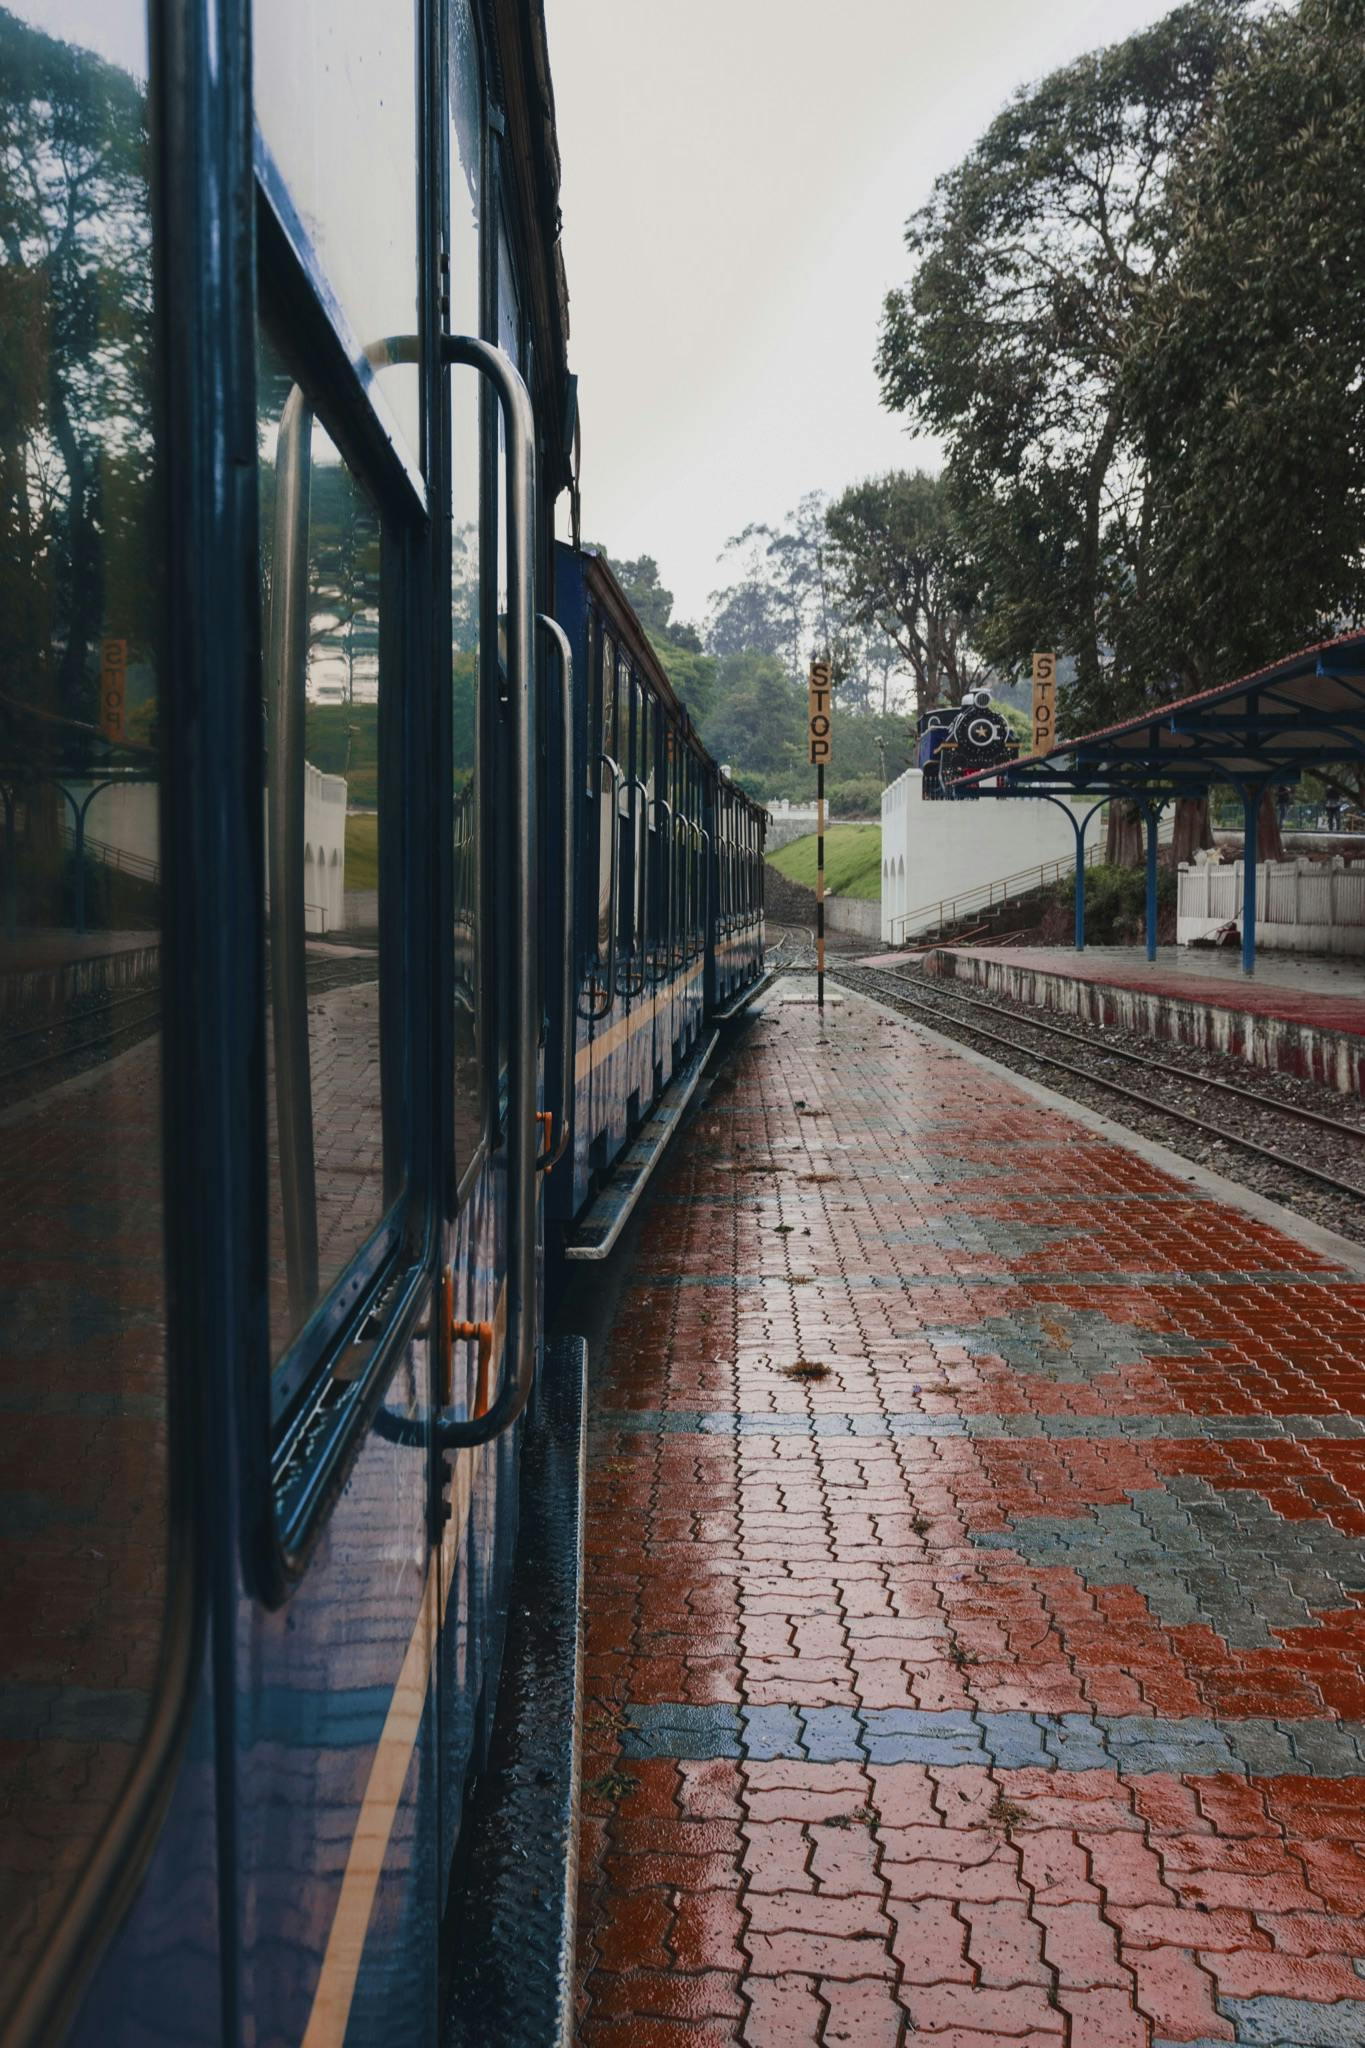 RAIN TRAIN